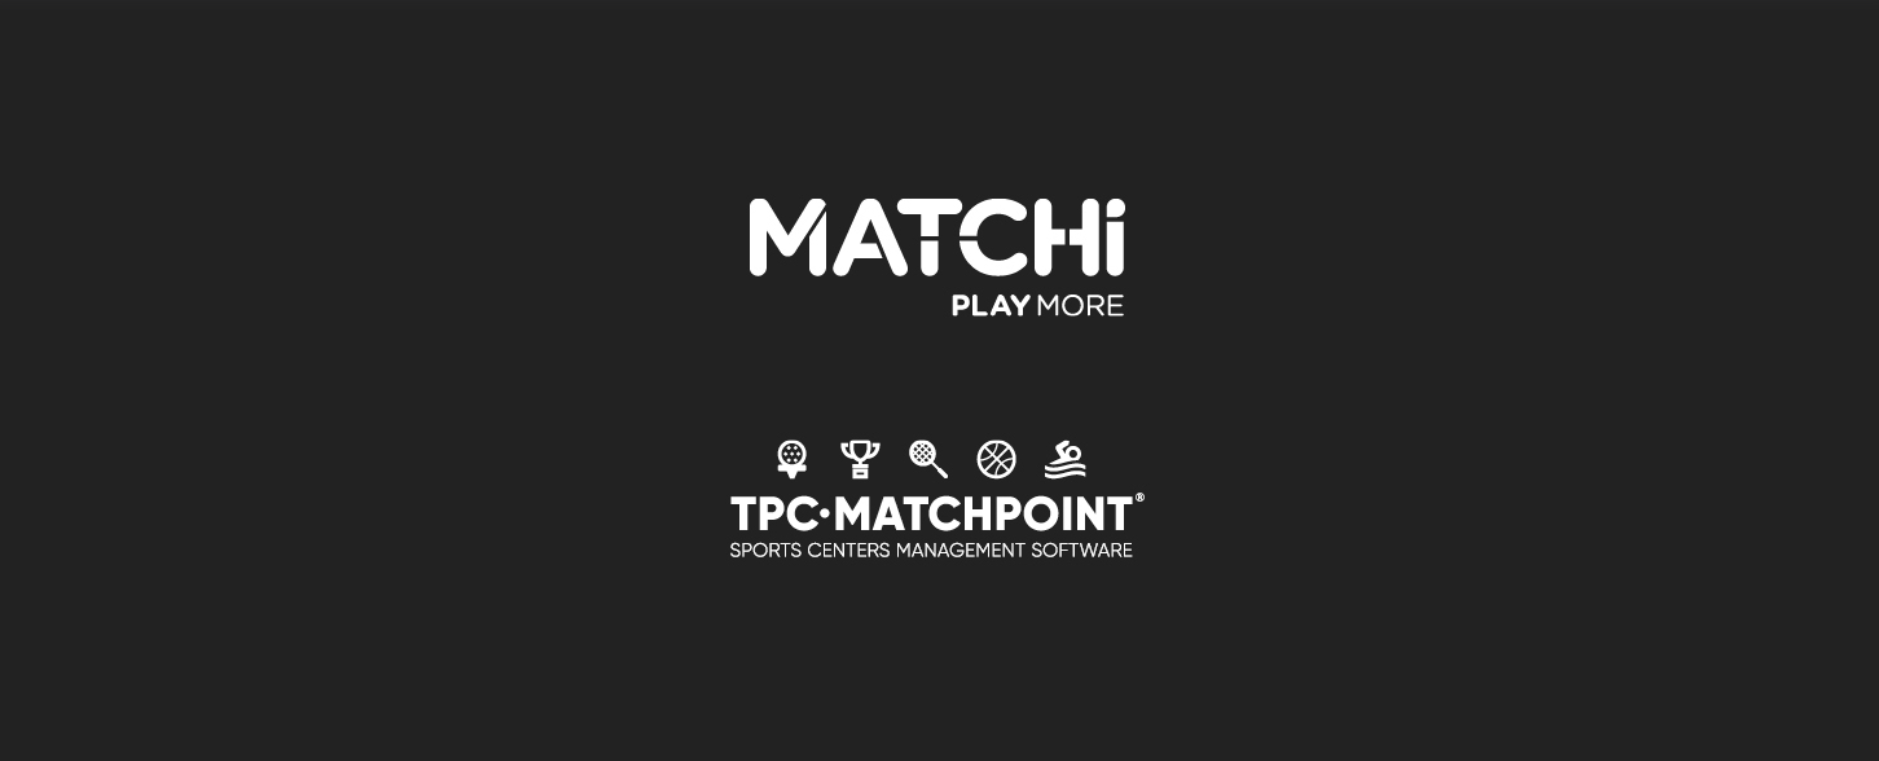 Matchi TPC Matchpoint-samenwerking